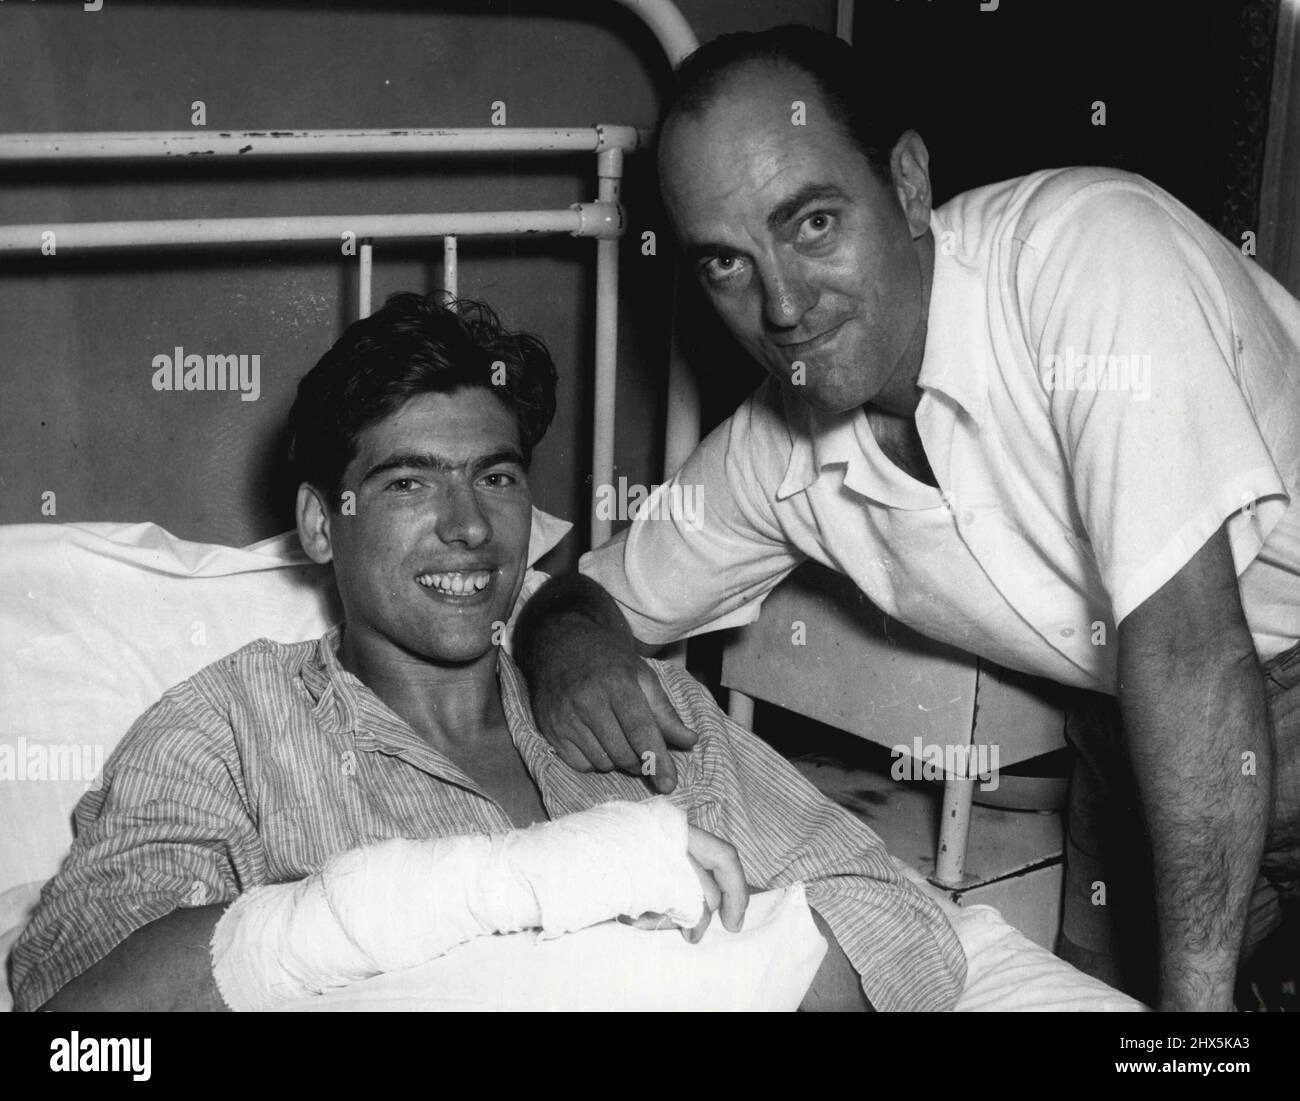 Helmut Scheidl left and Luke de Beyer - Shark attack. March 22, 1955. Stock Photo